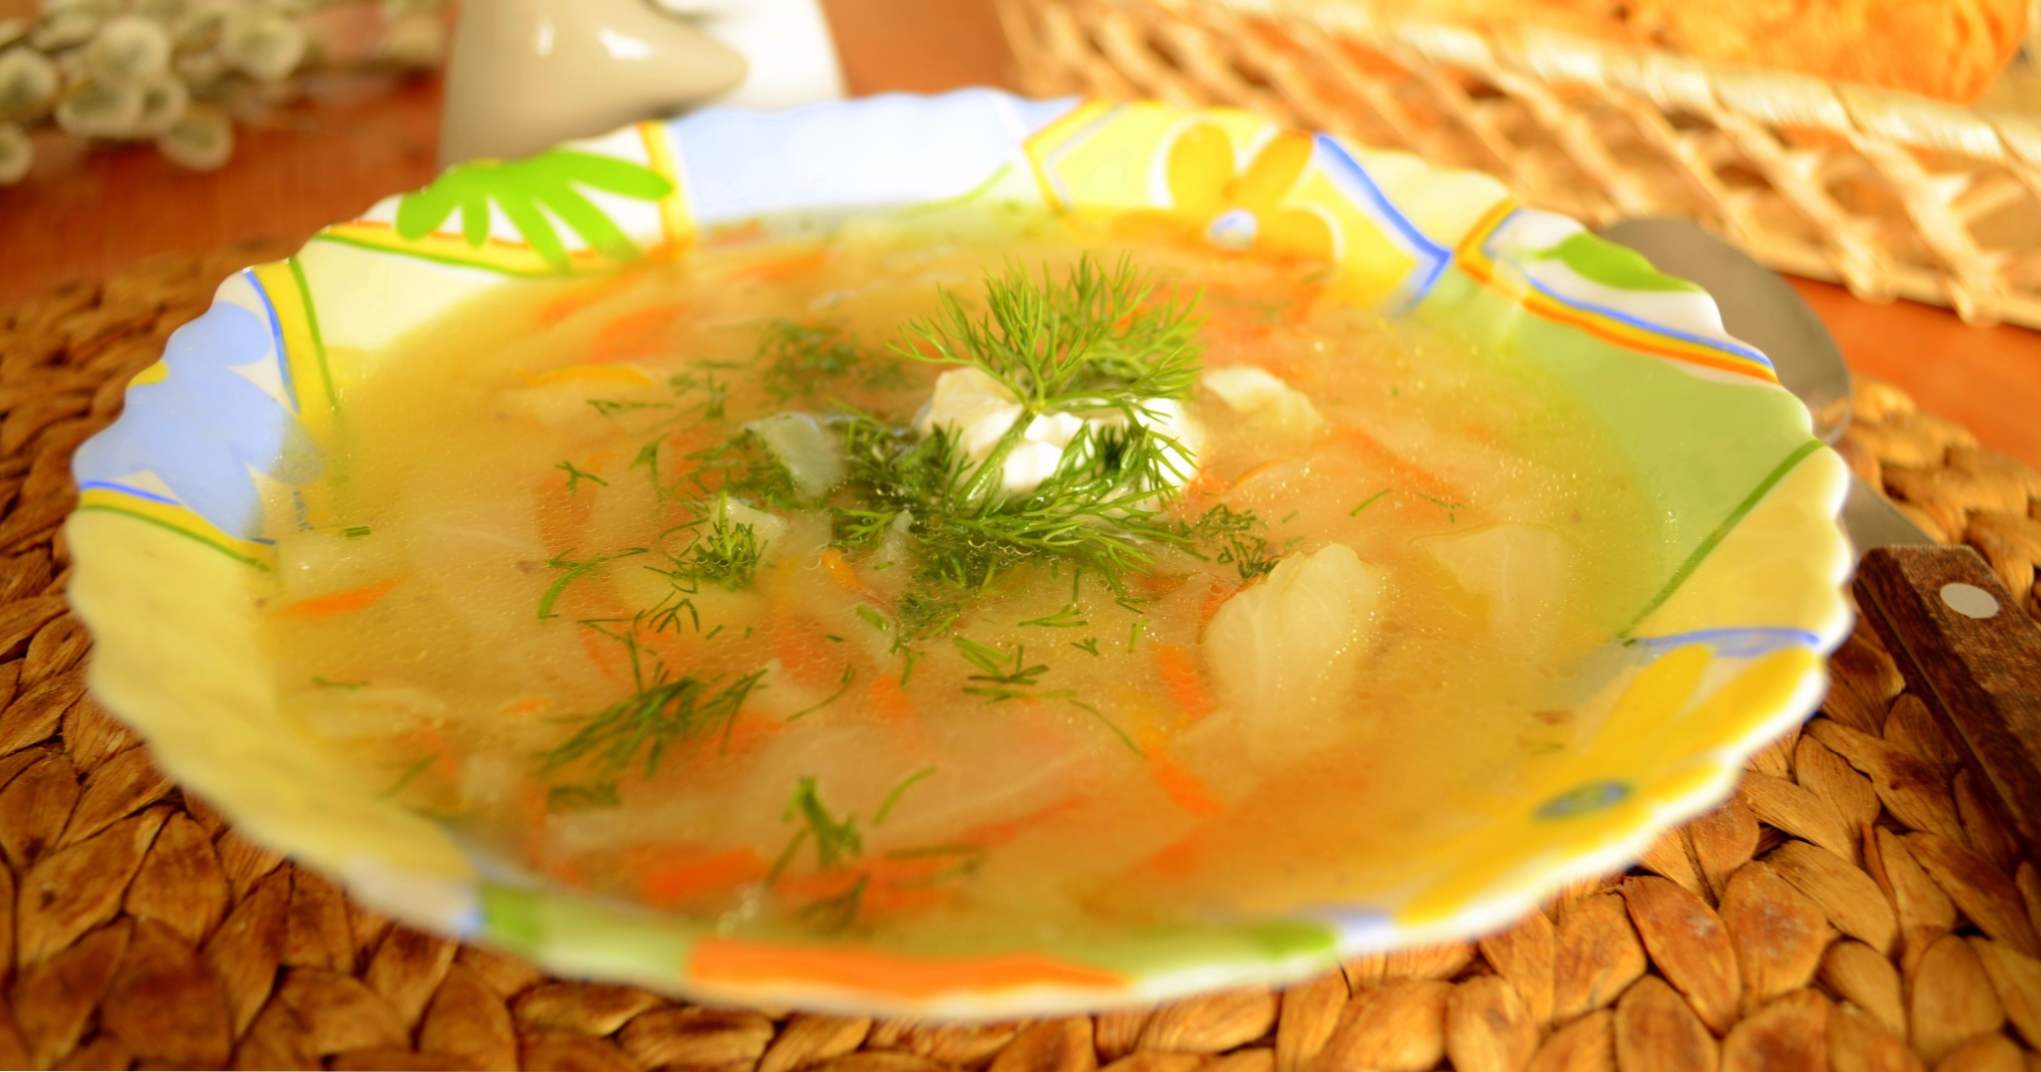 Svježa juha od kupusa s piletinom - 7 ukusnih recepata za kuhanje